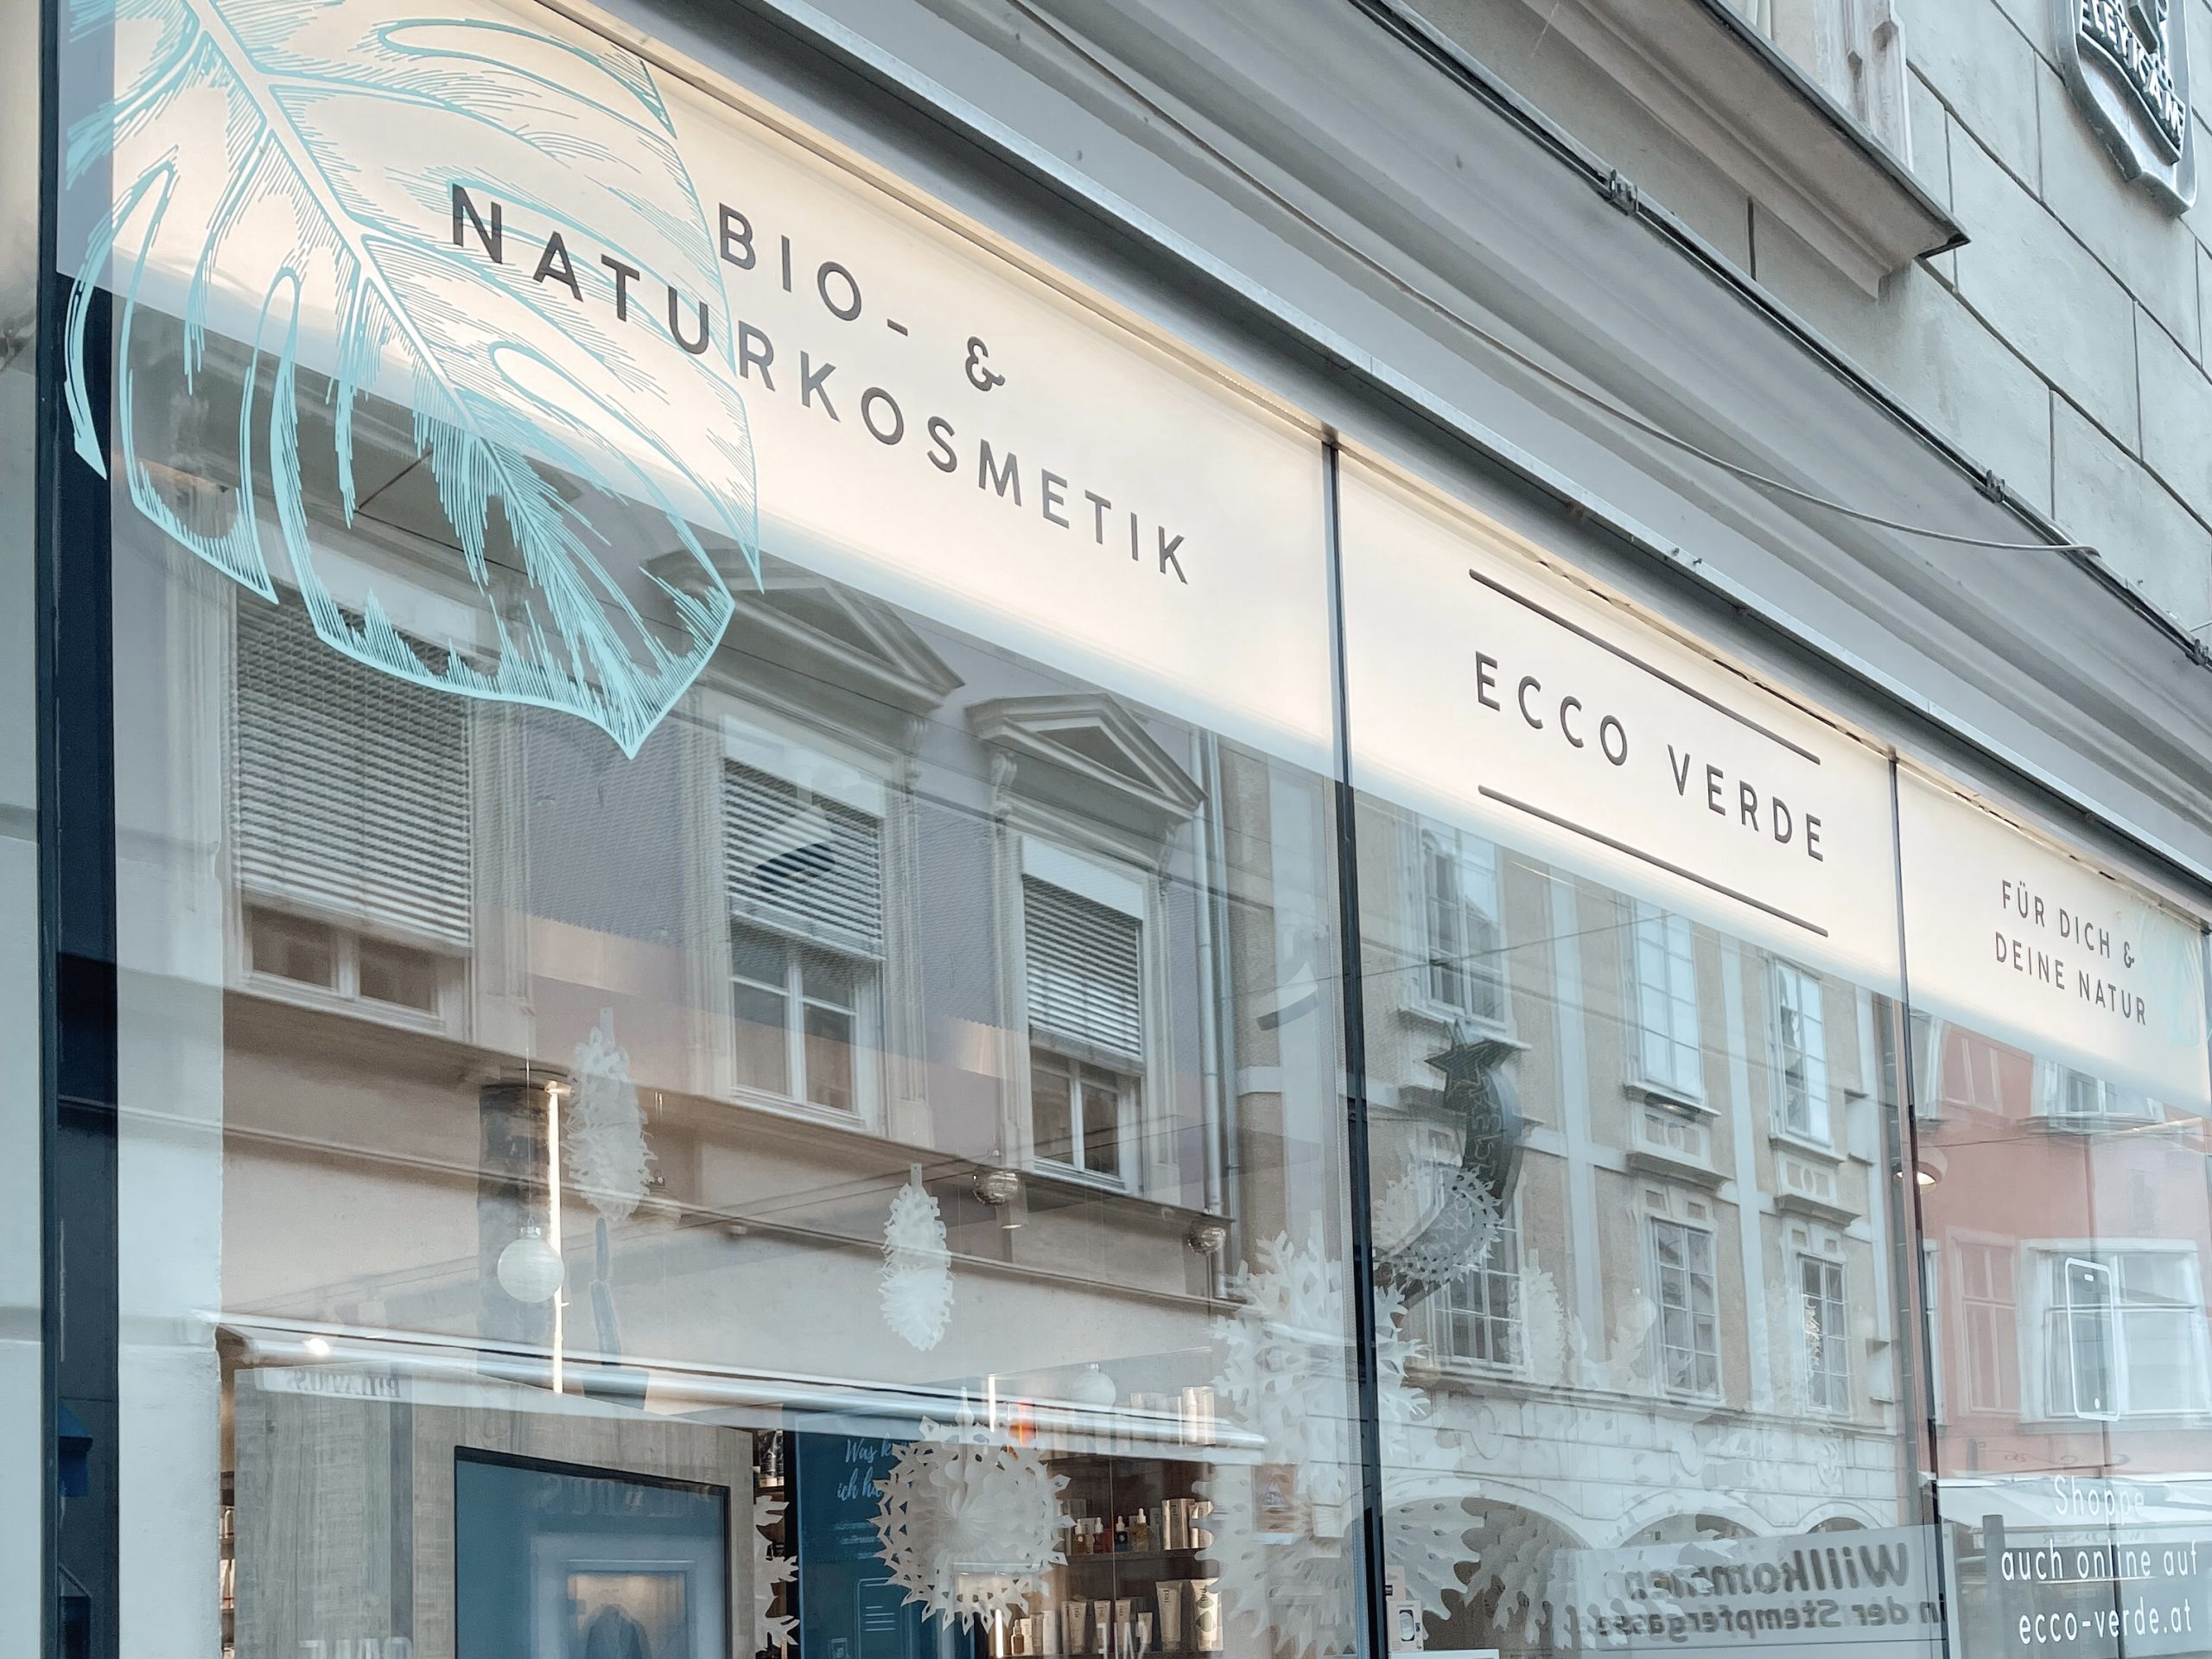 Bio- & Naturkosmetik-Geschäft "Ecco Verde" von außen